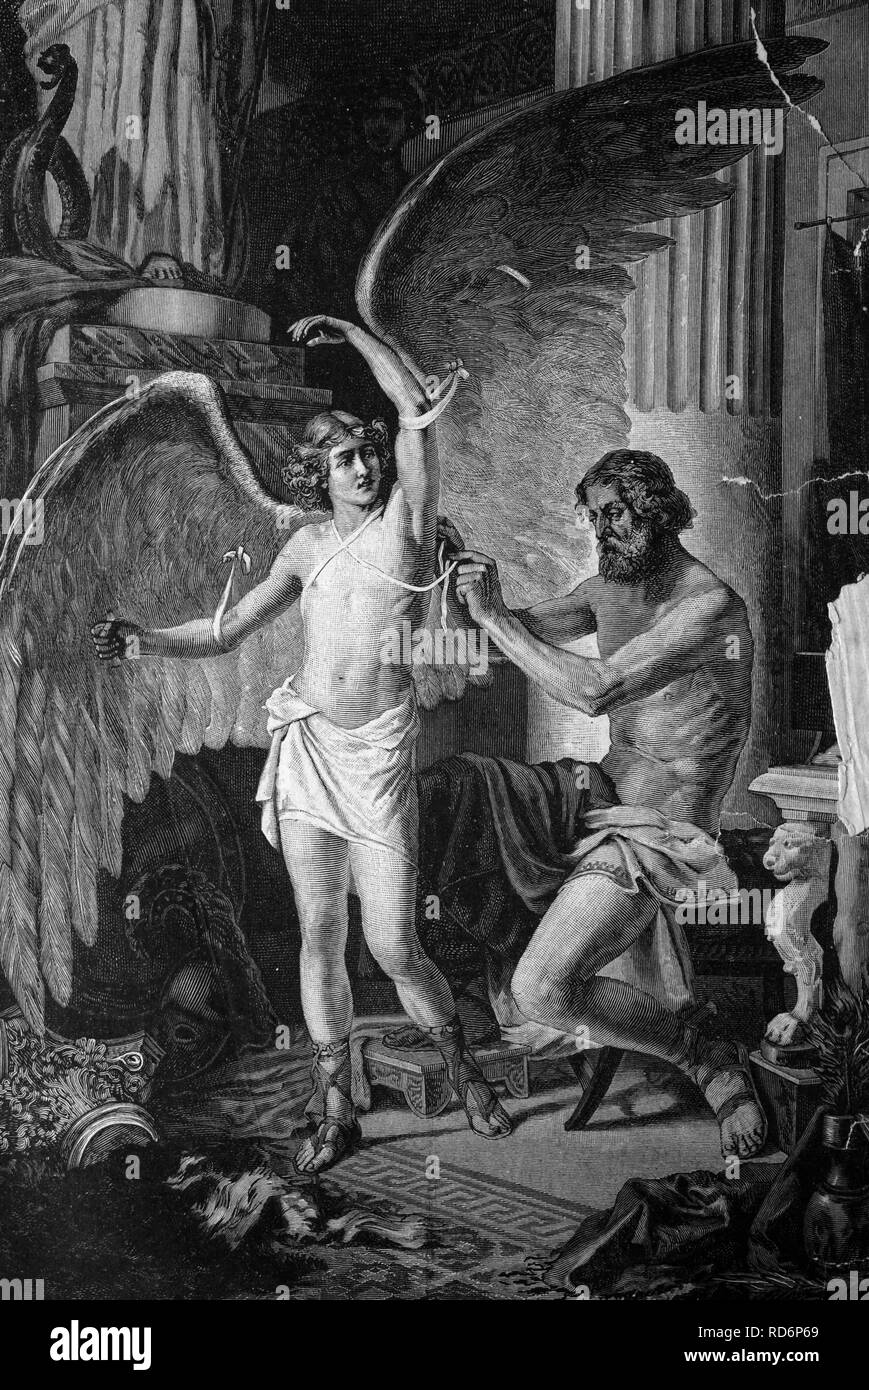 La mythologie grecque, dédale l'équipement de son fils Icarus avec ailes, illustration du historique, vers 1886 Banque D'Images